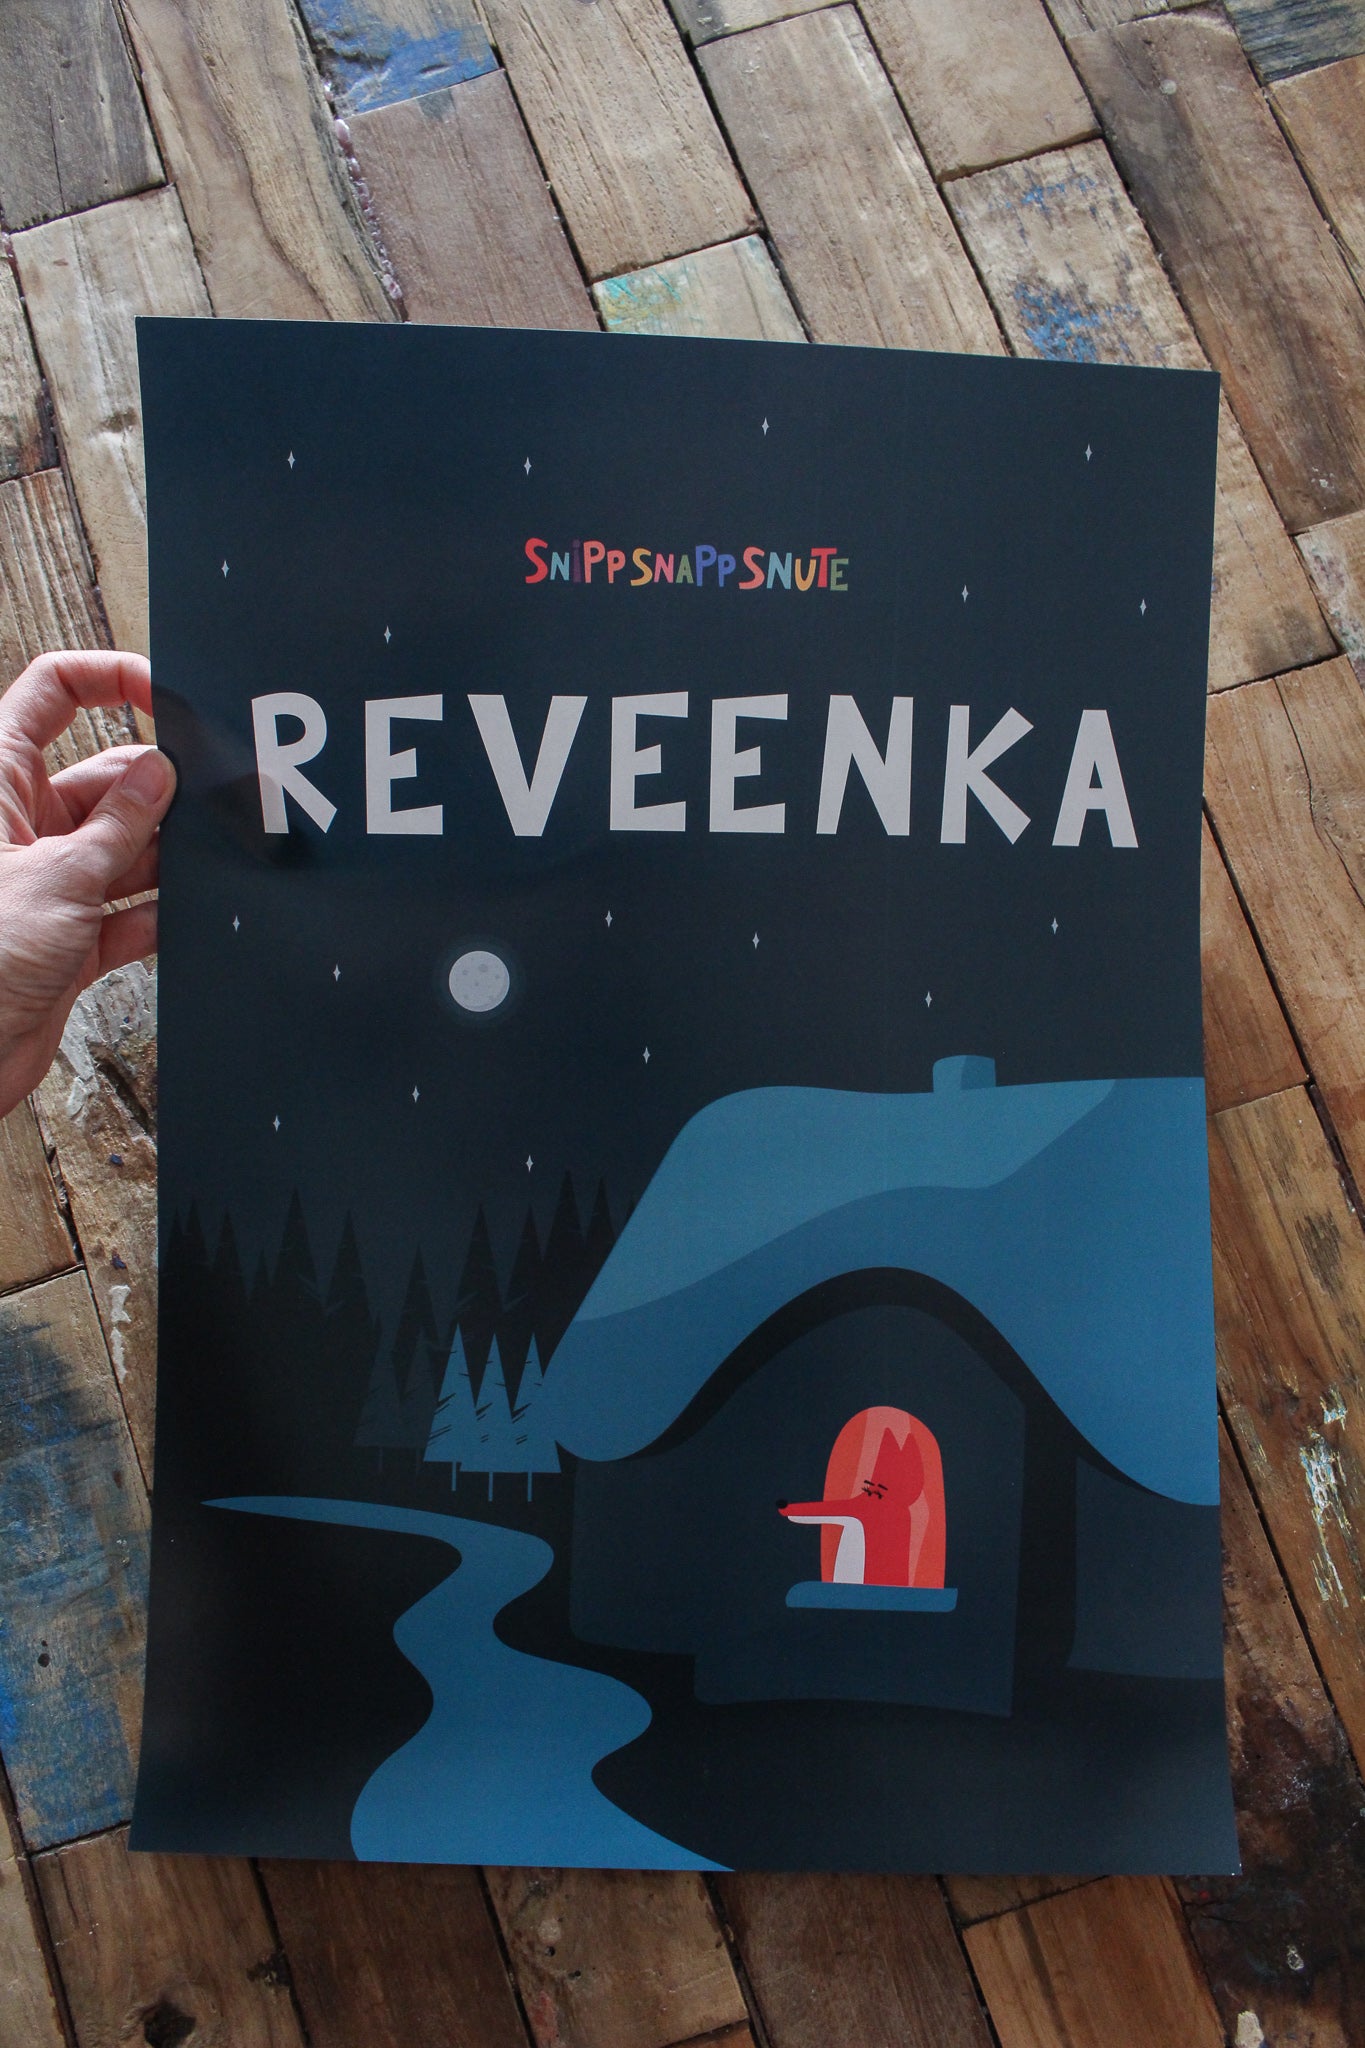 Plakat av Reveenka